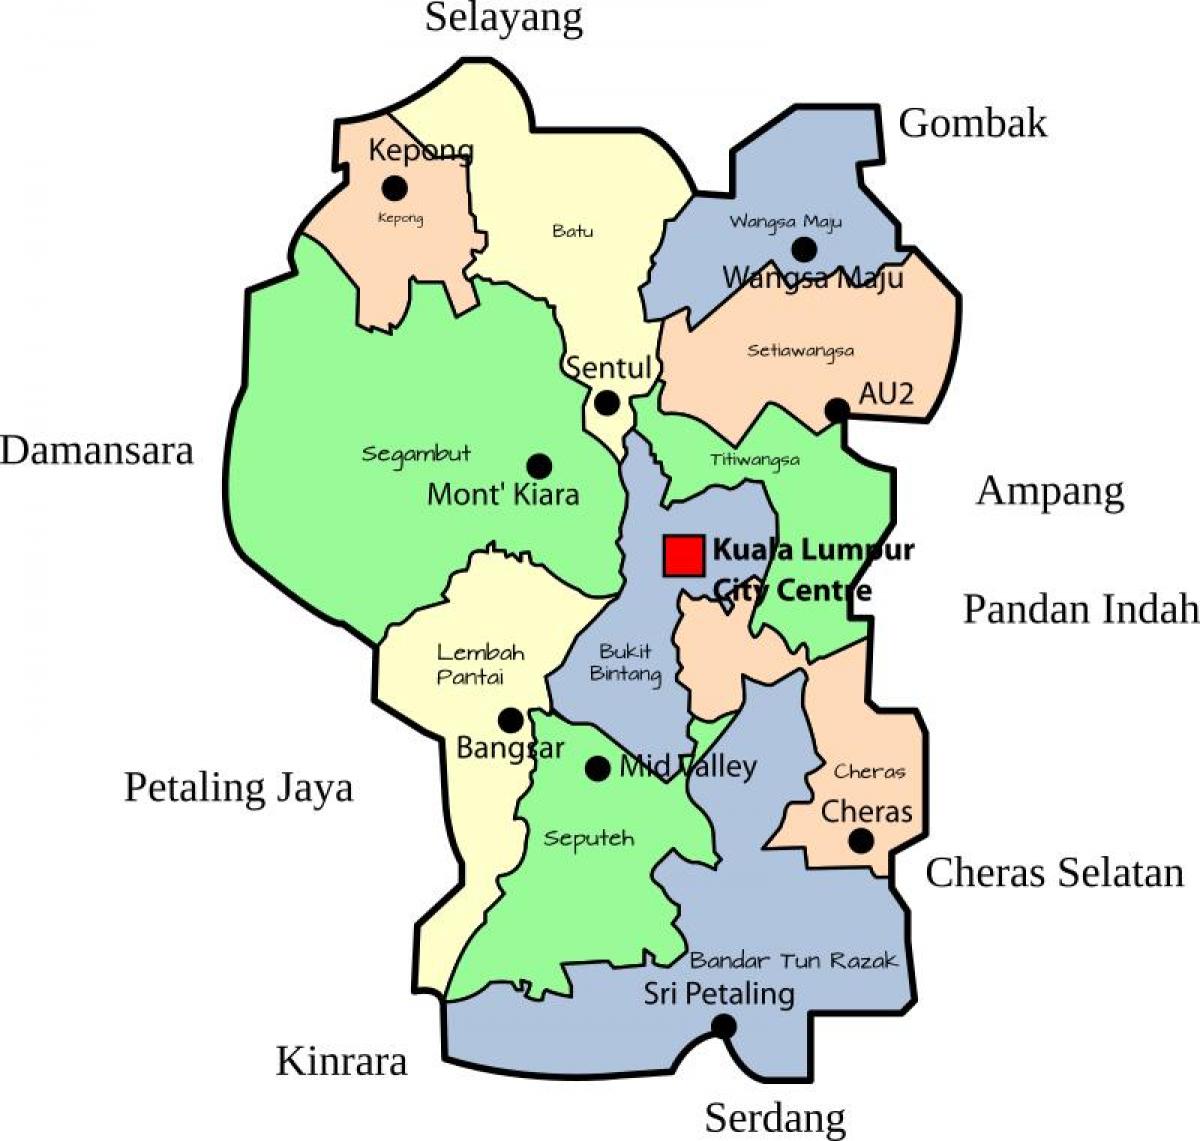 خريطة منطقة كوالالمبور (KL)